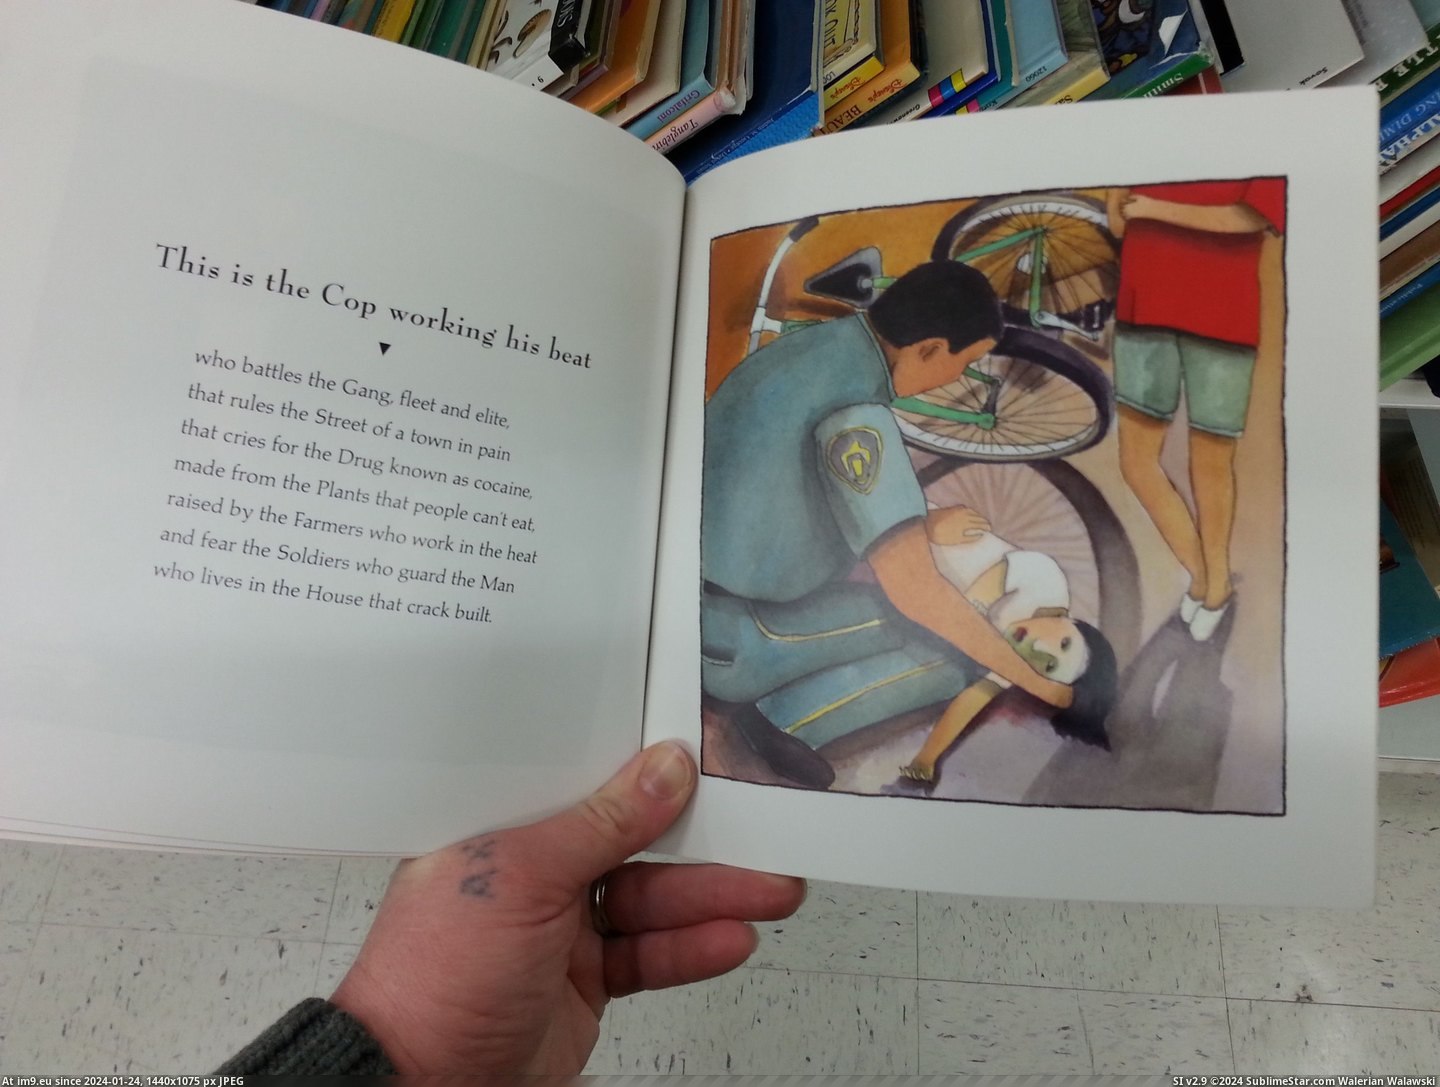 #Wtf #Store #Thrift #Crack #Book #Children [Wtf] Found this children's book about crack at a thrift store today 2 Pic. (Bild von album My r/WTF favs))